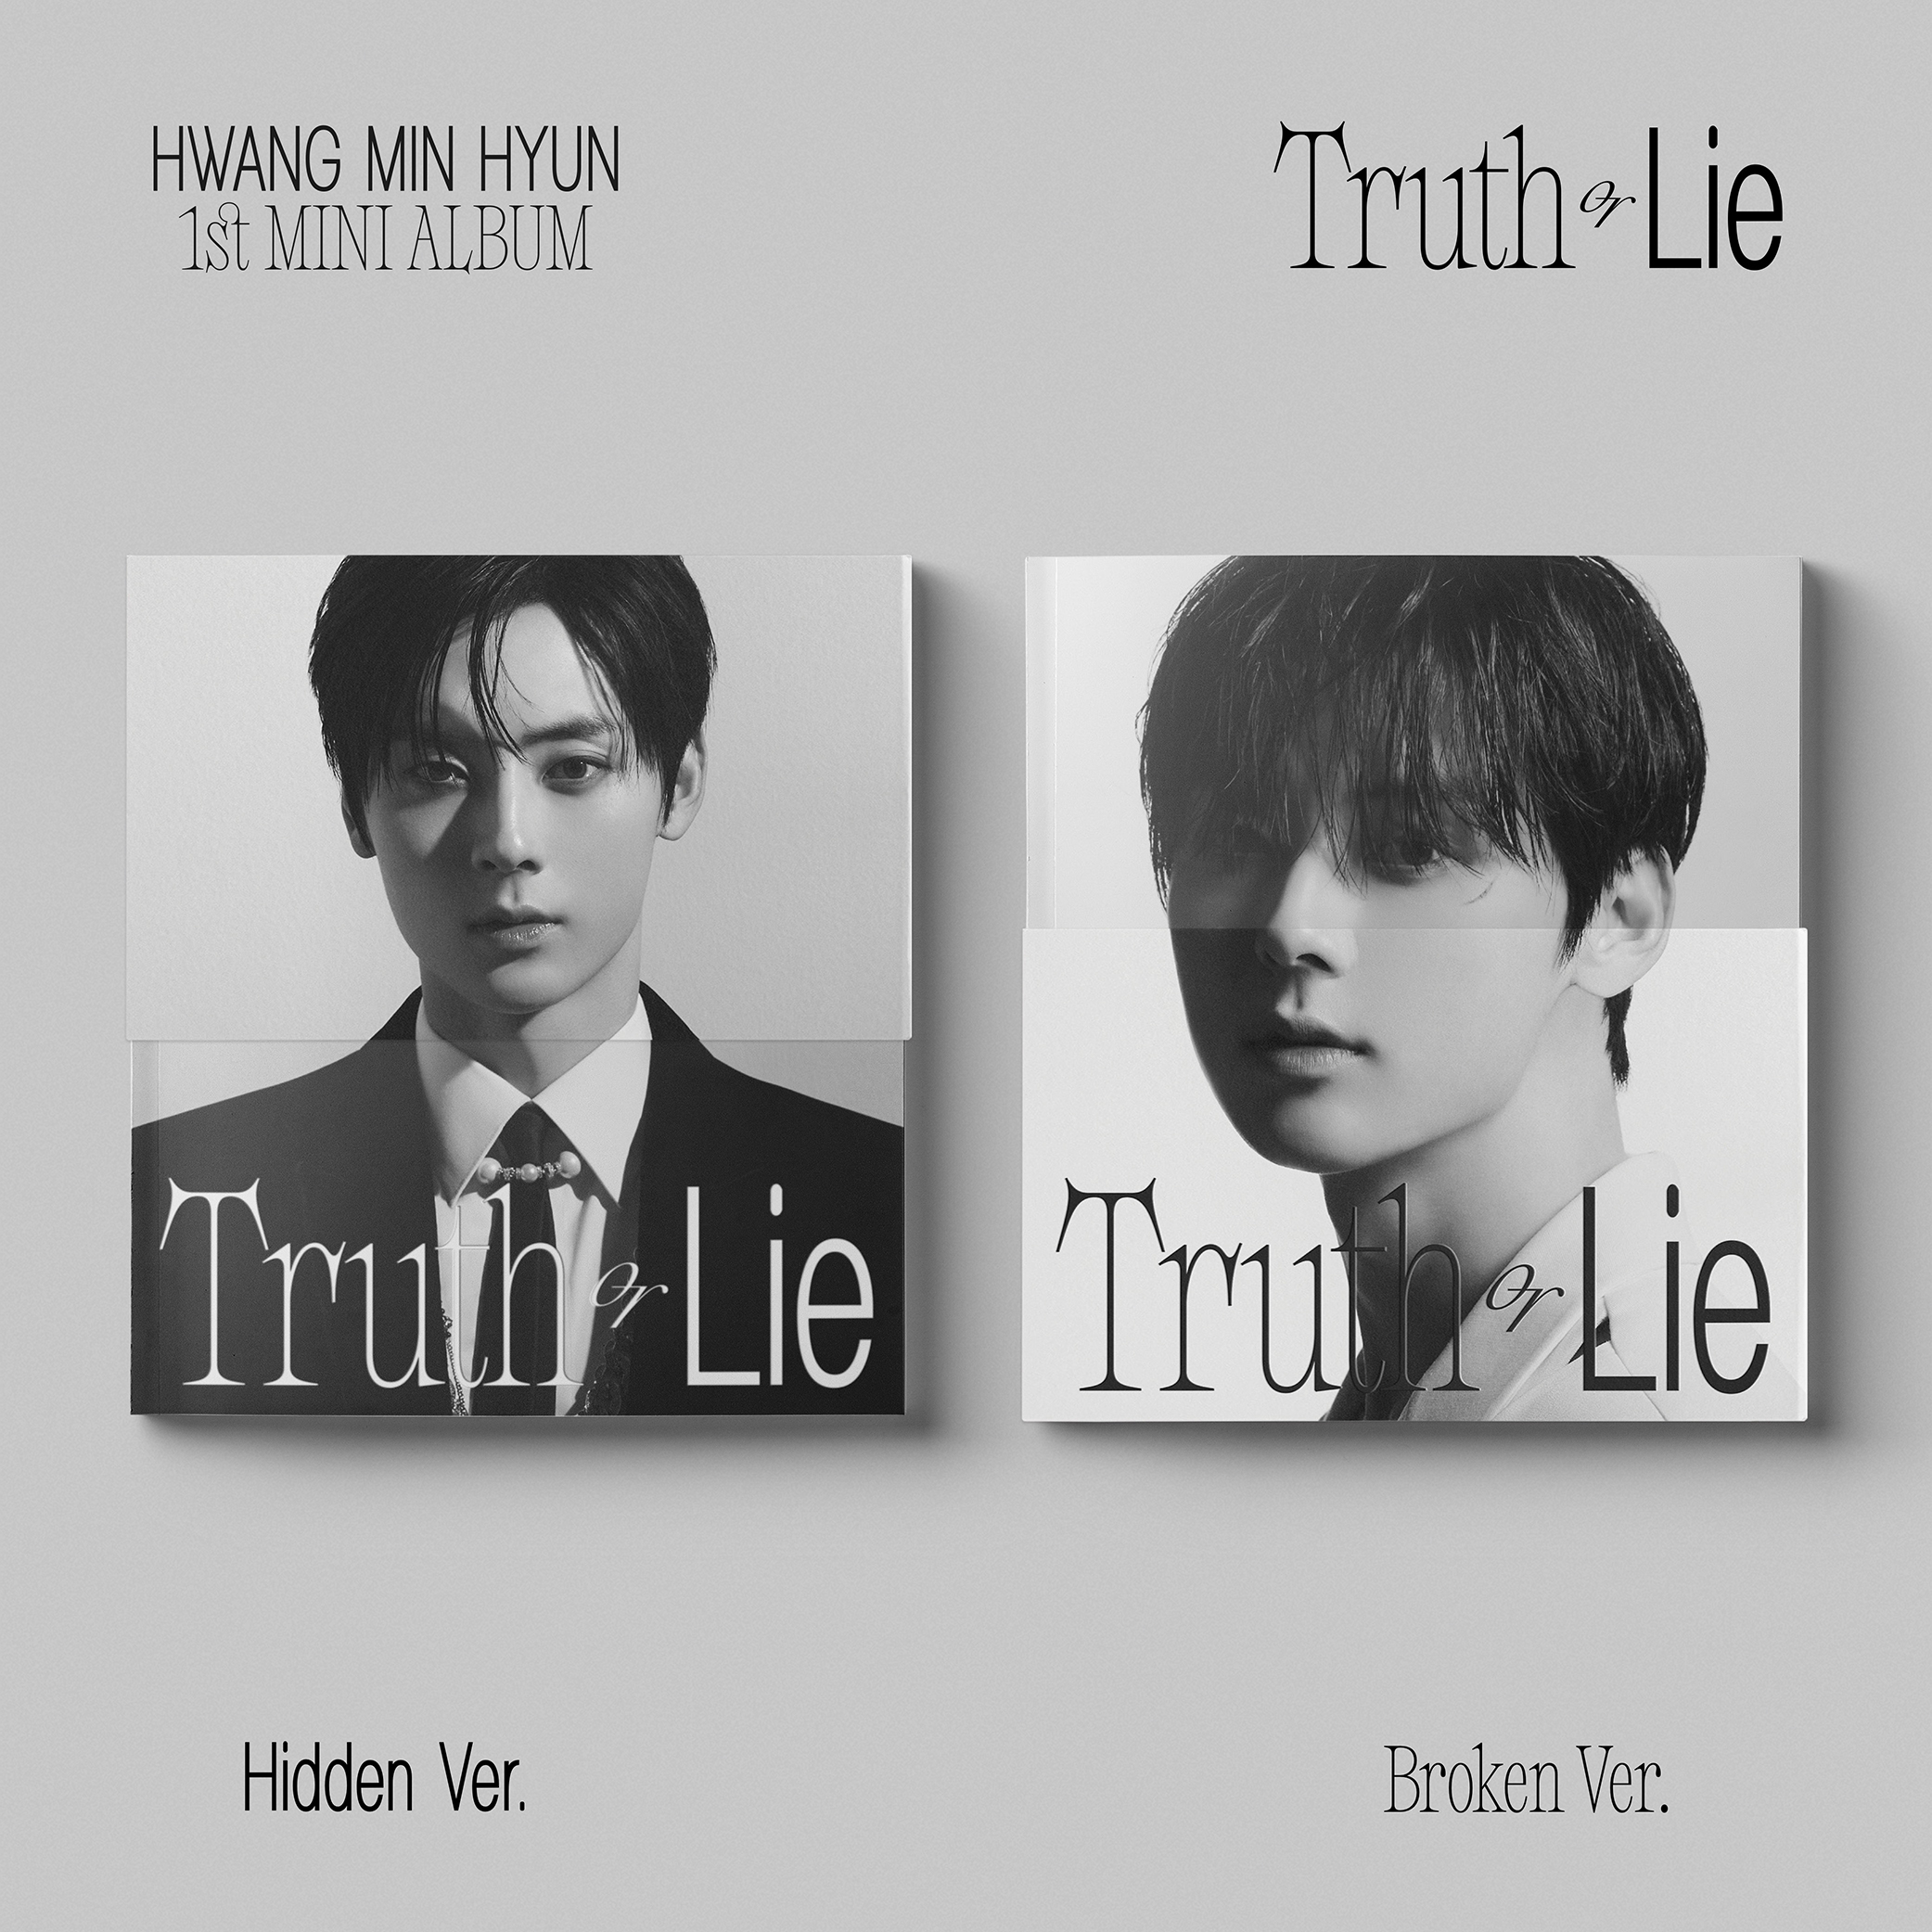 [全款 裸专 第二批 截止到3.5早7点] [Ktown4u Special Gift] [2CD 套装] HWANG MIN HYUN - 迷你1辑 [Truth or Lie] (Hidden Ver. + Broken Ver.) _黄旼炫观星台Observatory89